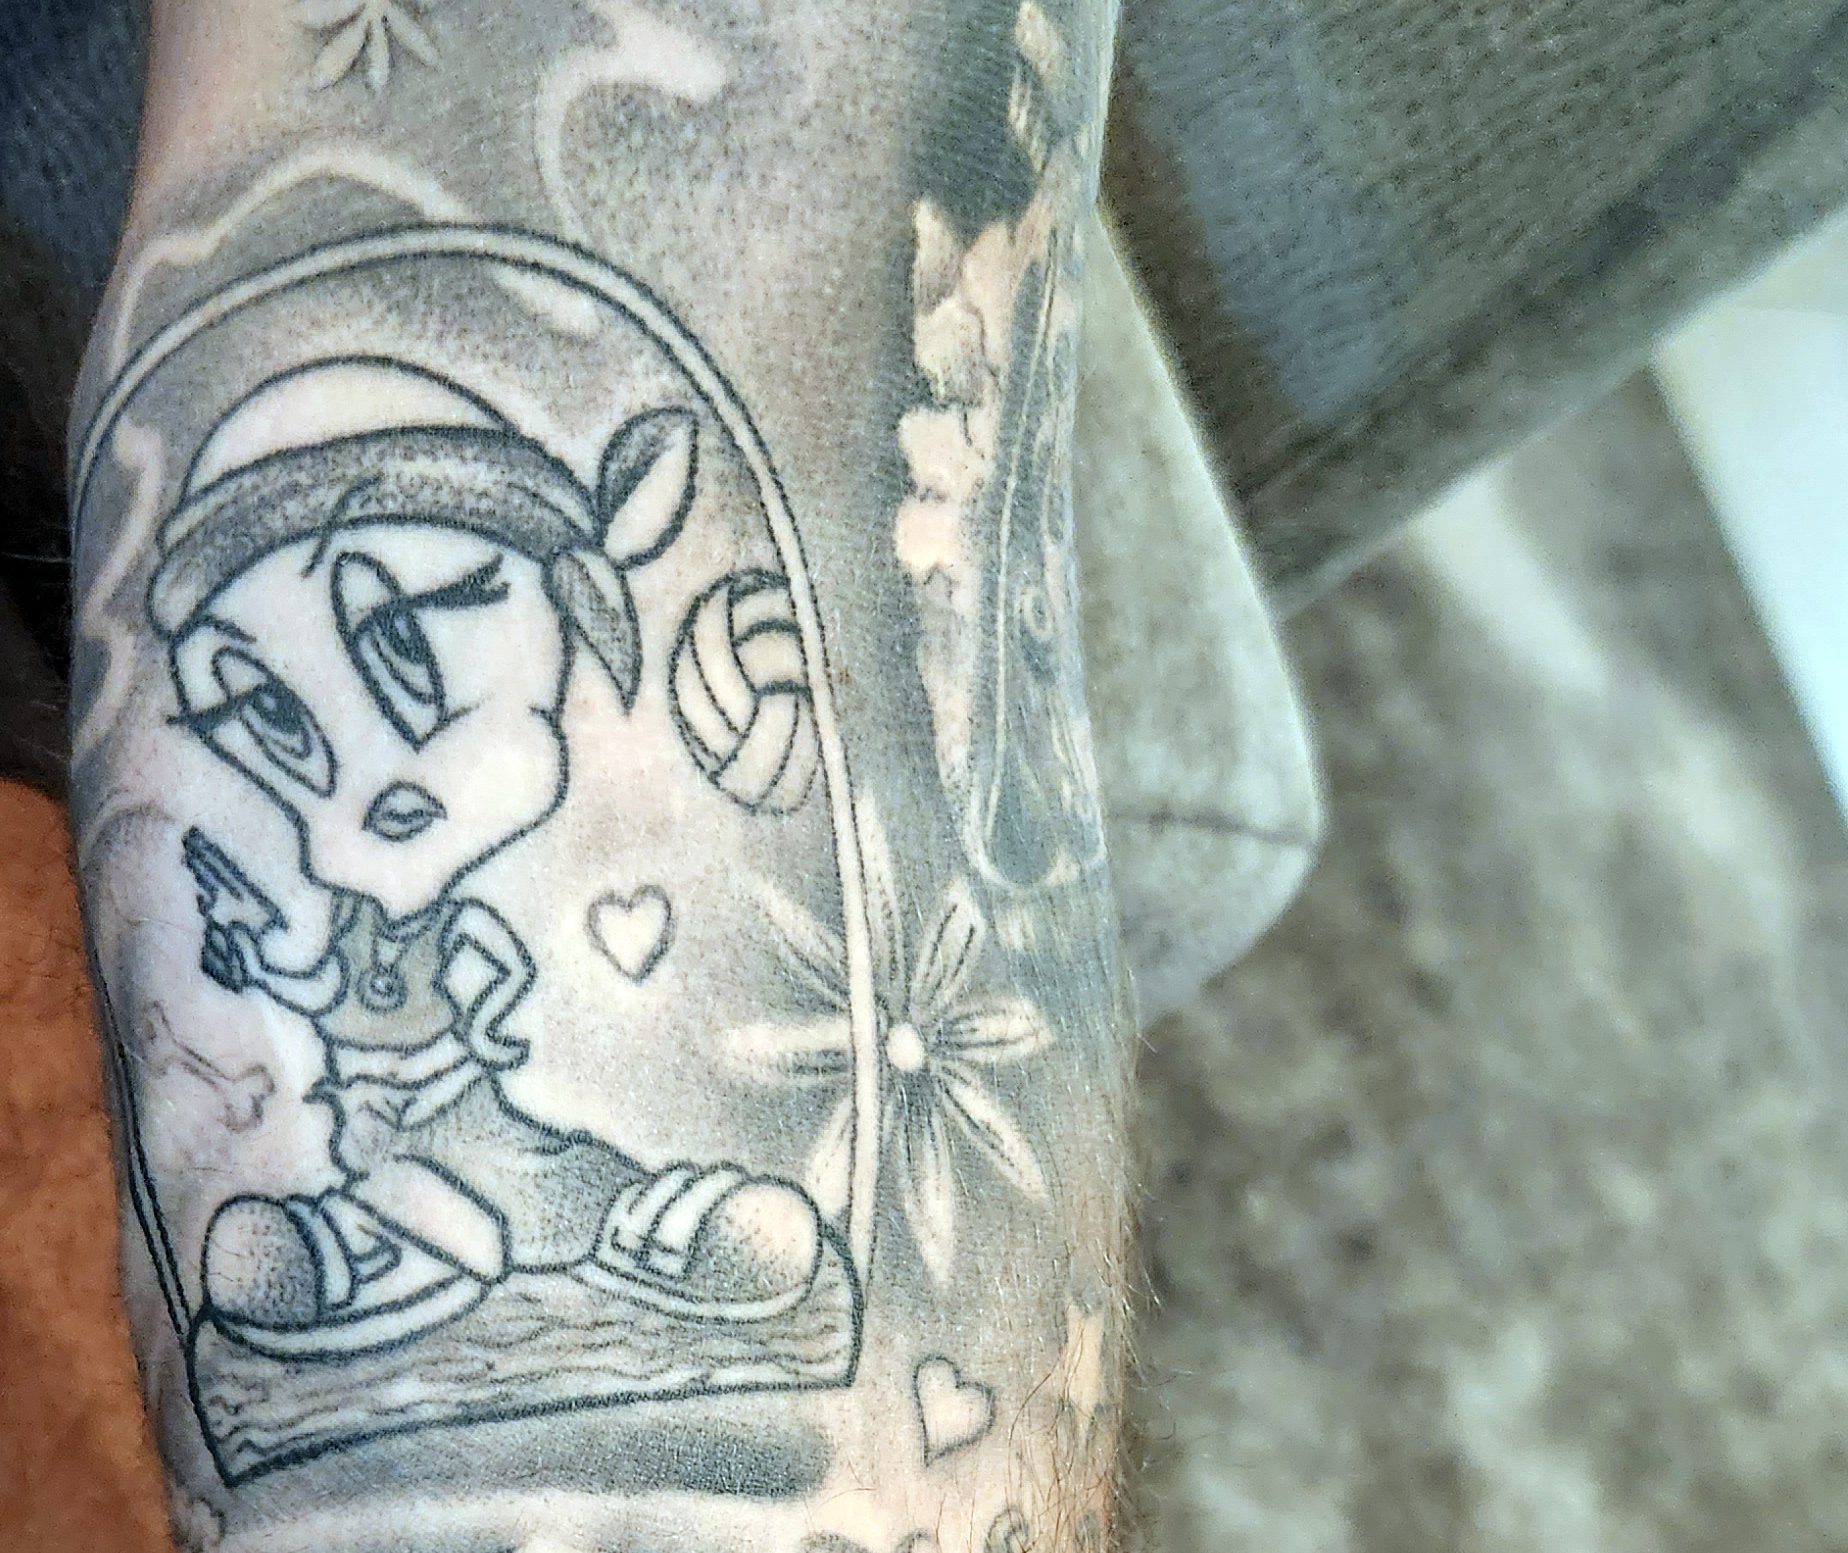 Photo of tattoo of cartoon character Tweety Bird